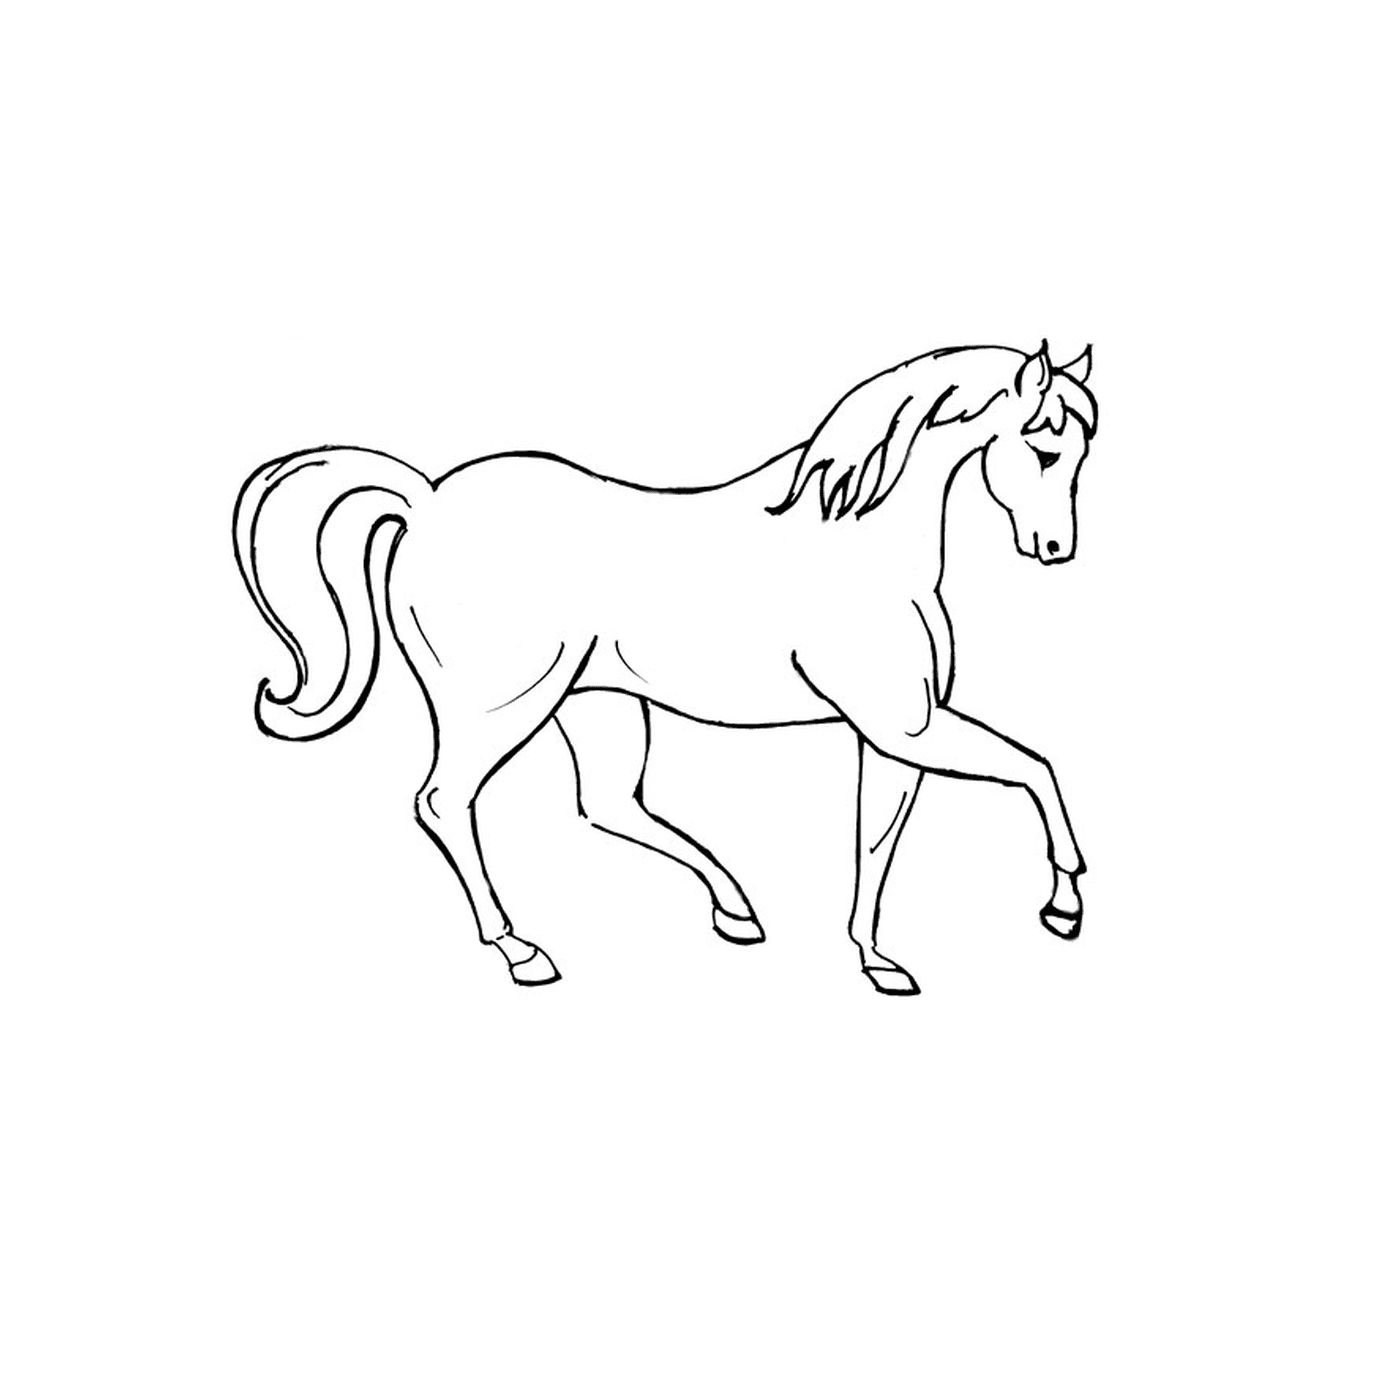   Vrac cheval - Un cheval blanc aux cheveux longs 